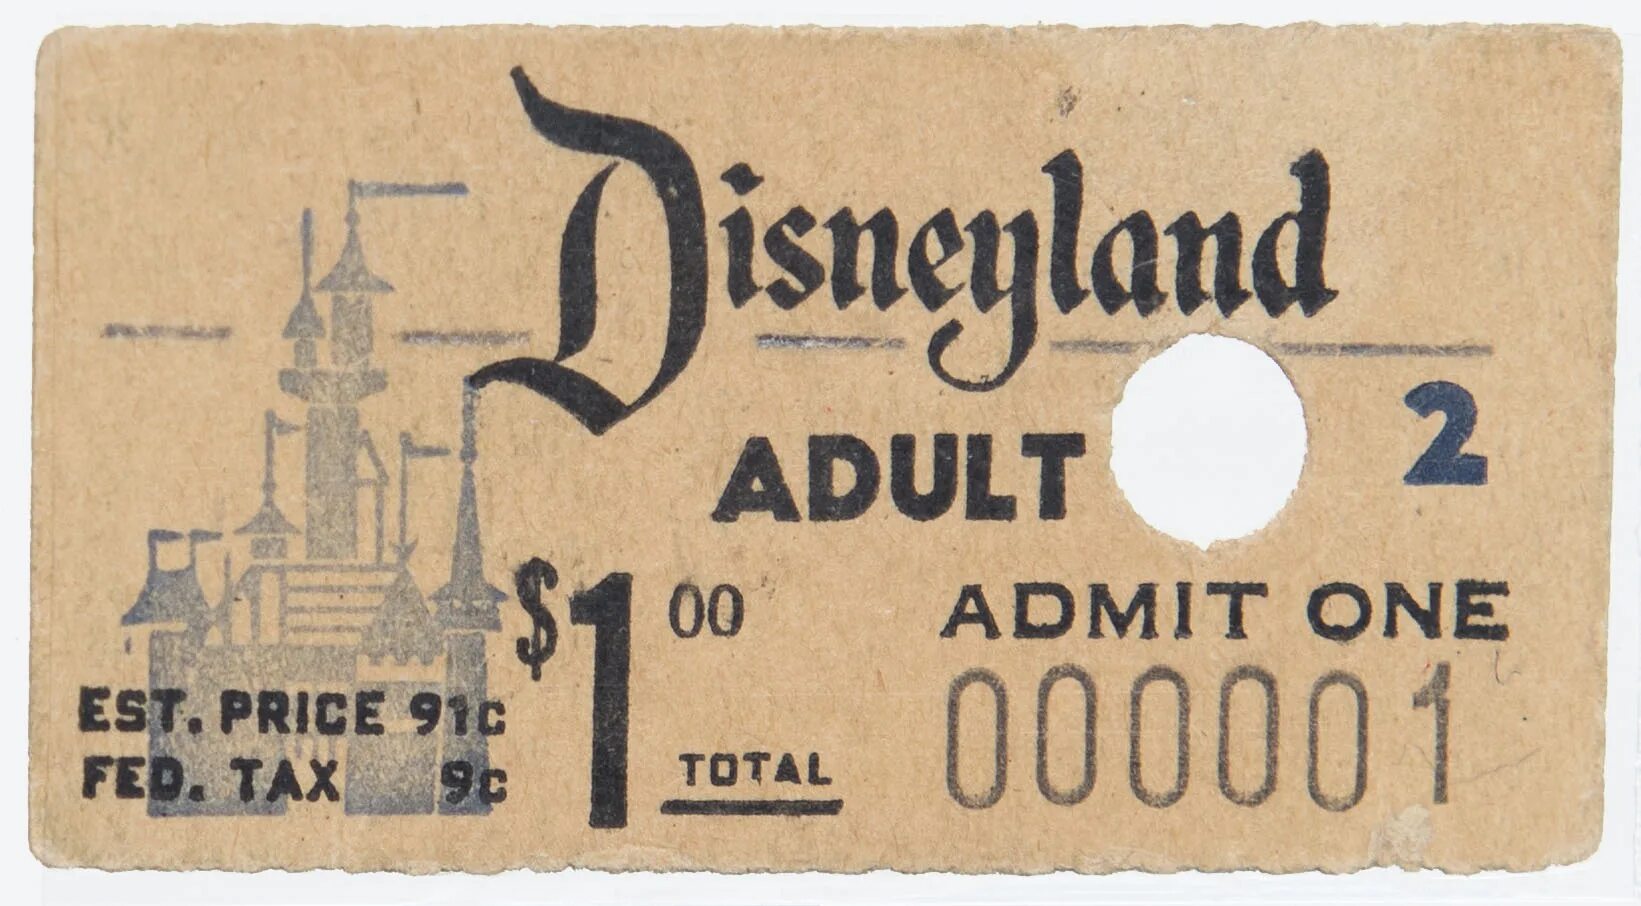 Билет в Диснейленд. Билеты Дисней. Парк Уолт Дисней 1955. Билет в Диснейленд фото.